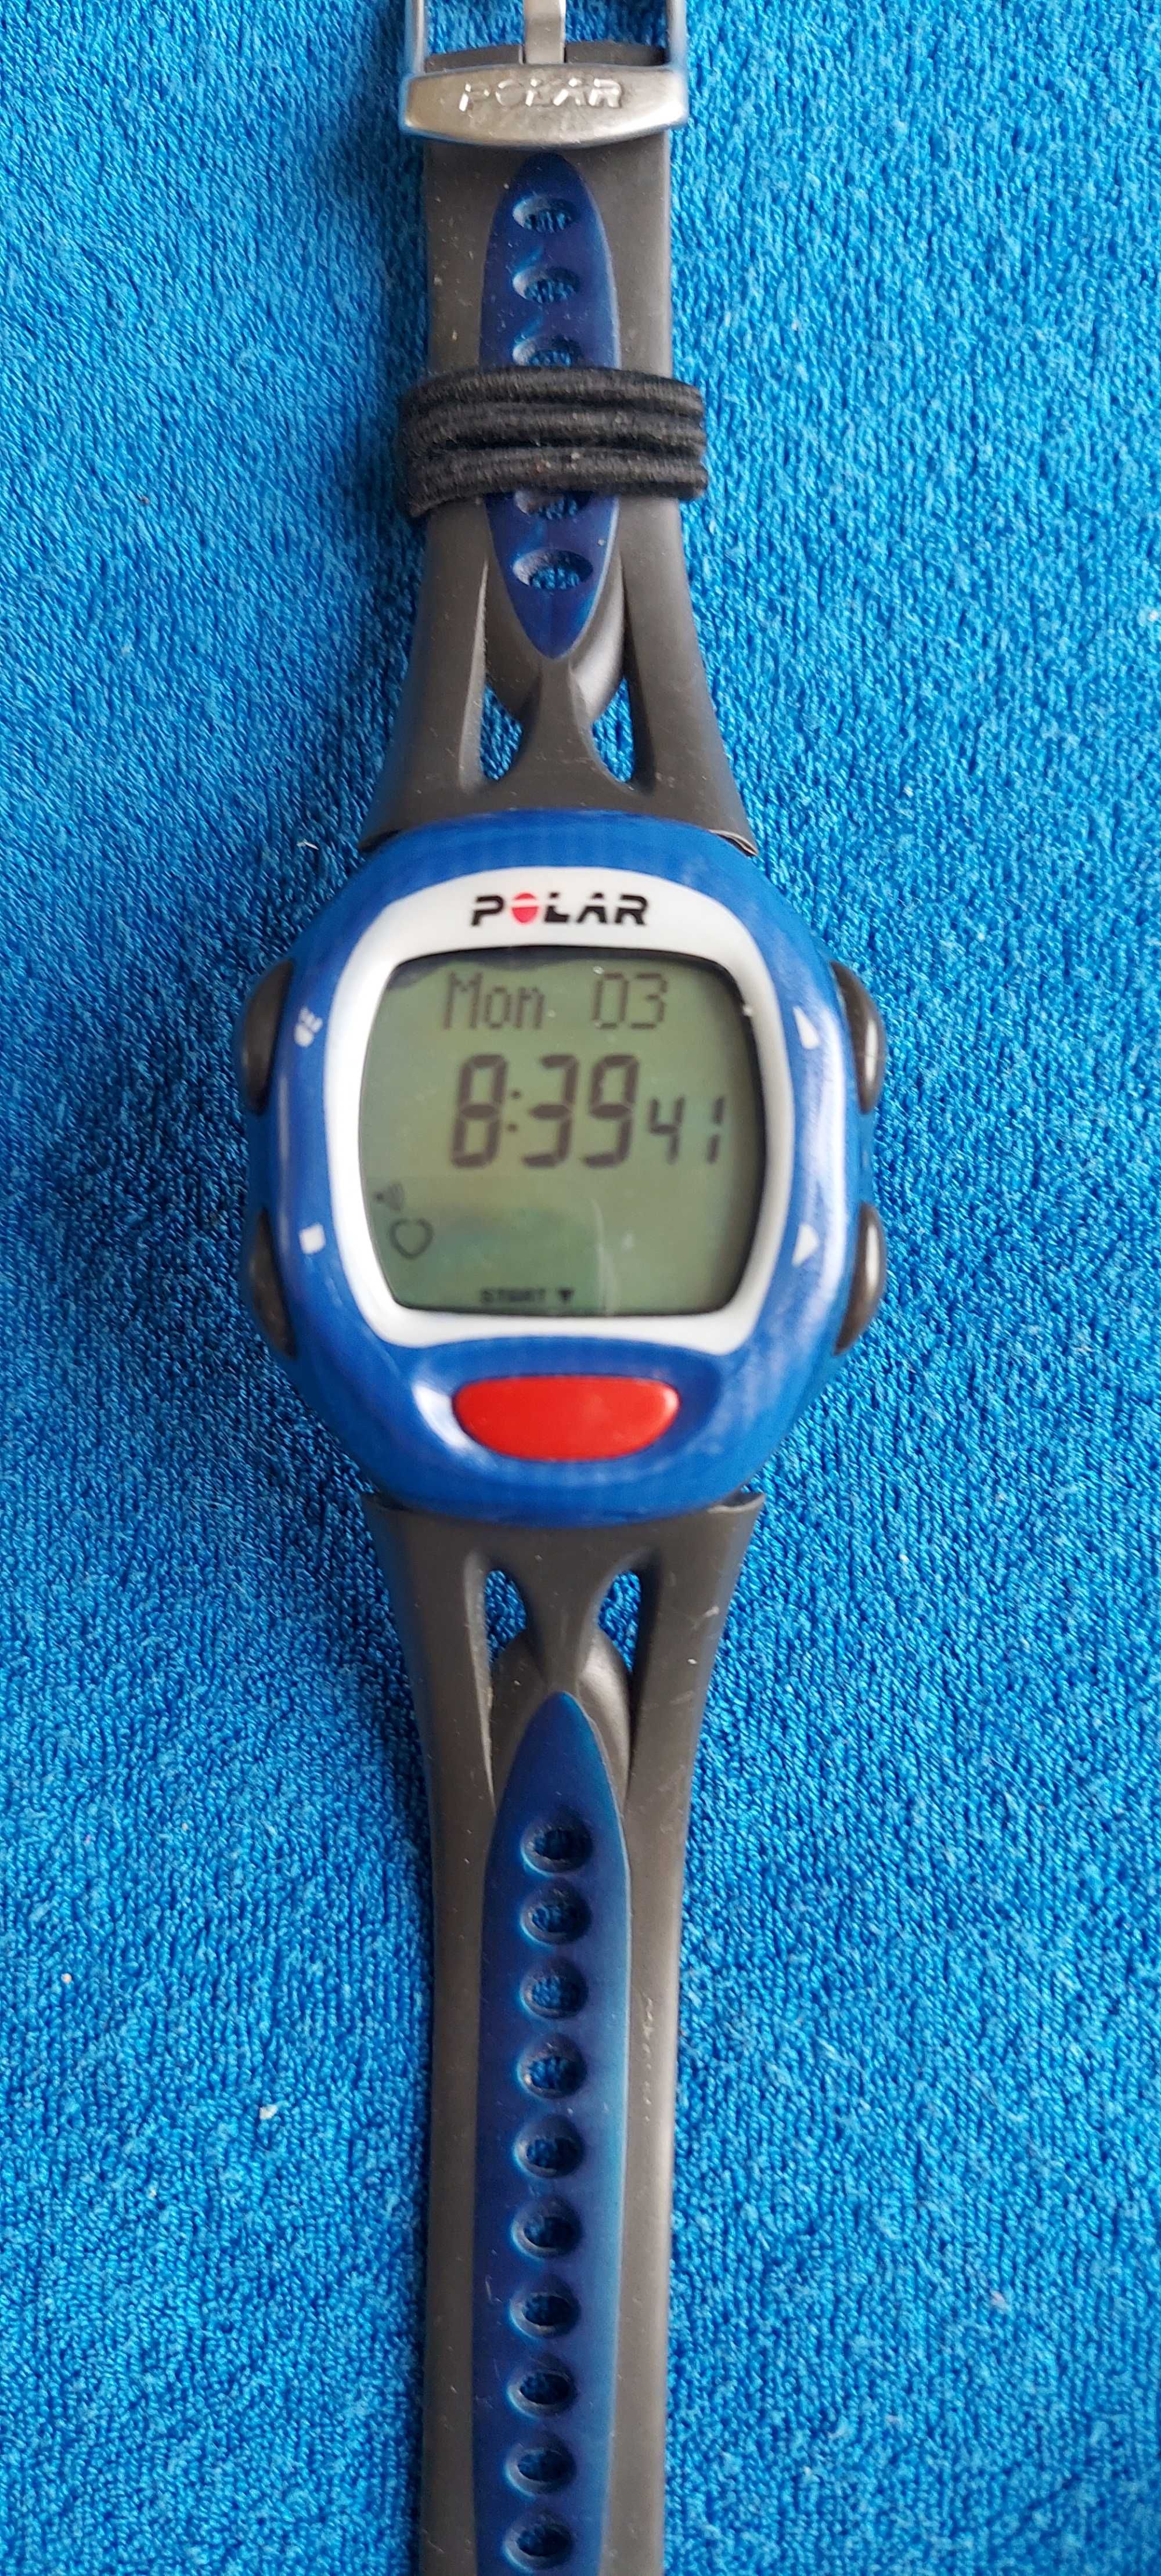 Пульсометр Polar зі спортивним годинником S 510 кардіо, вело, біг